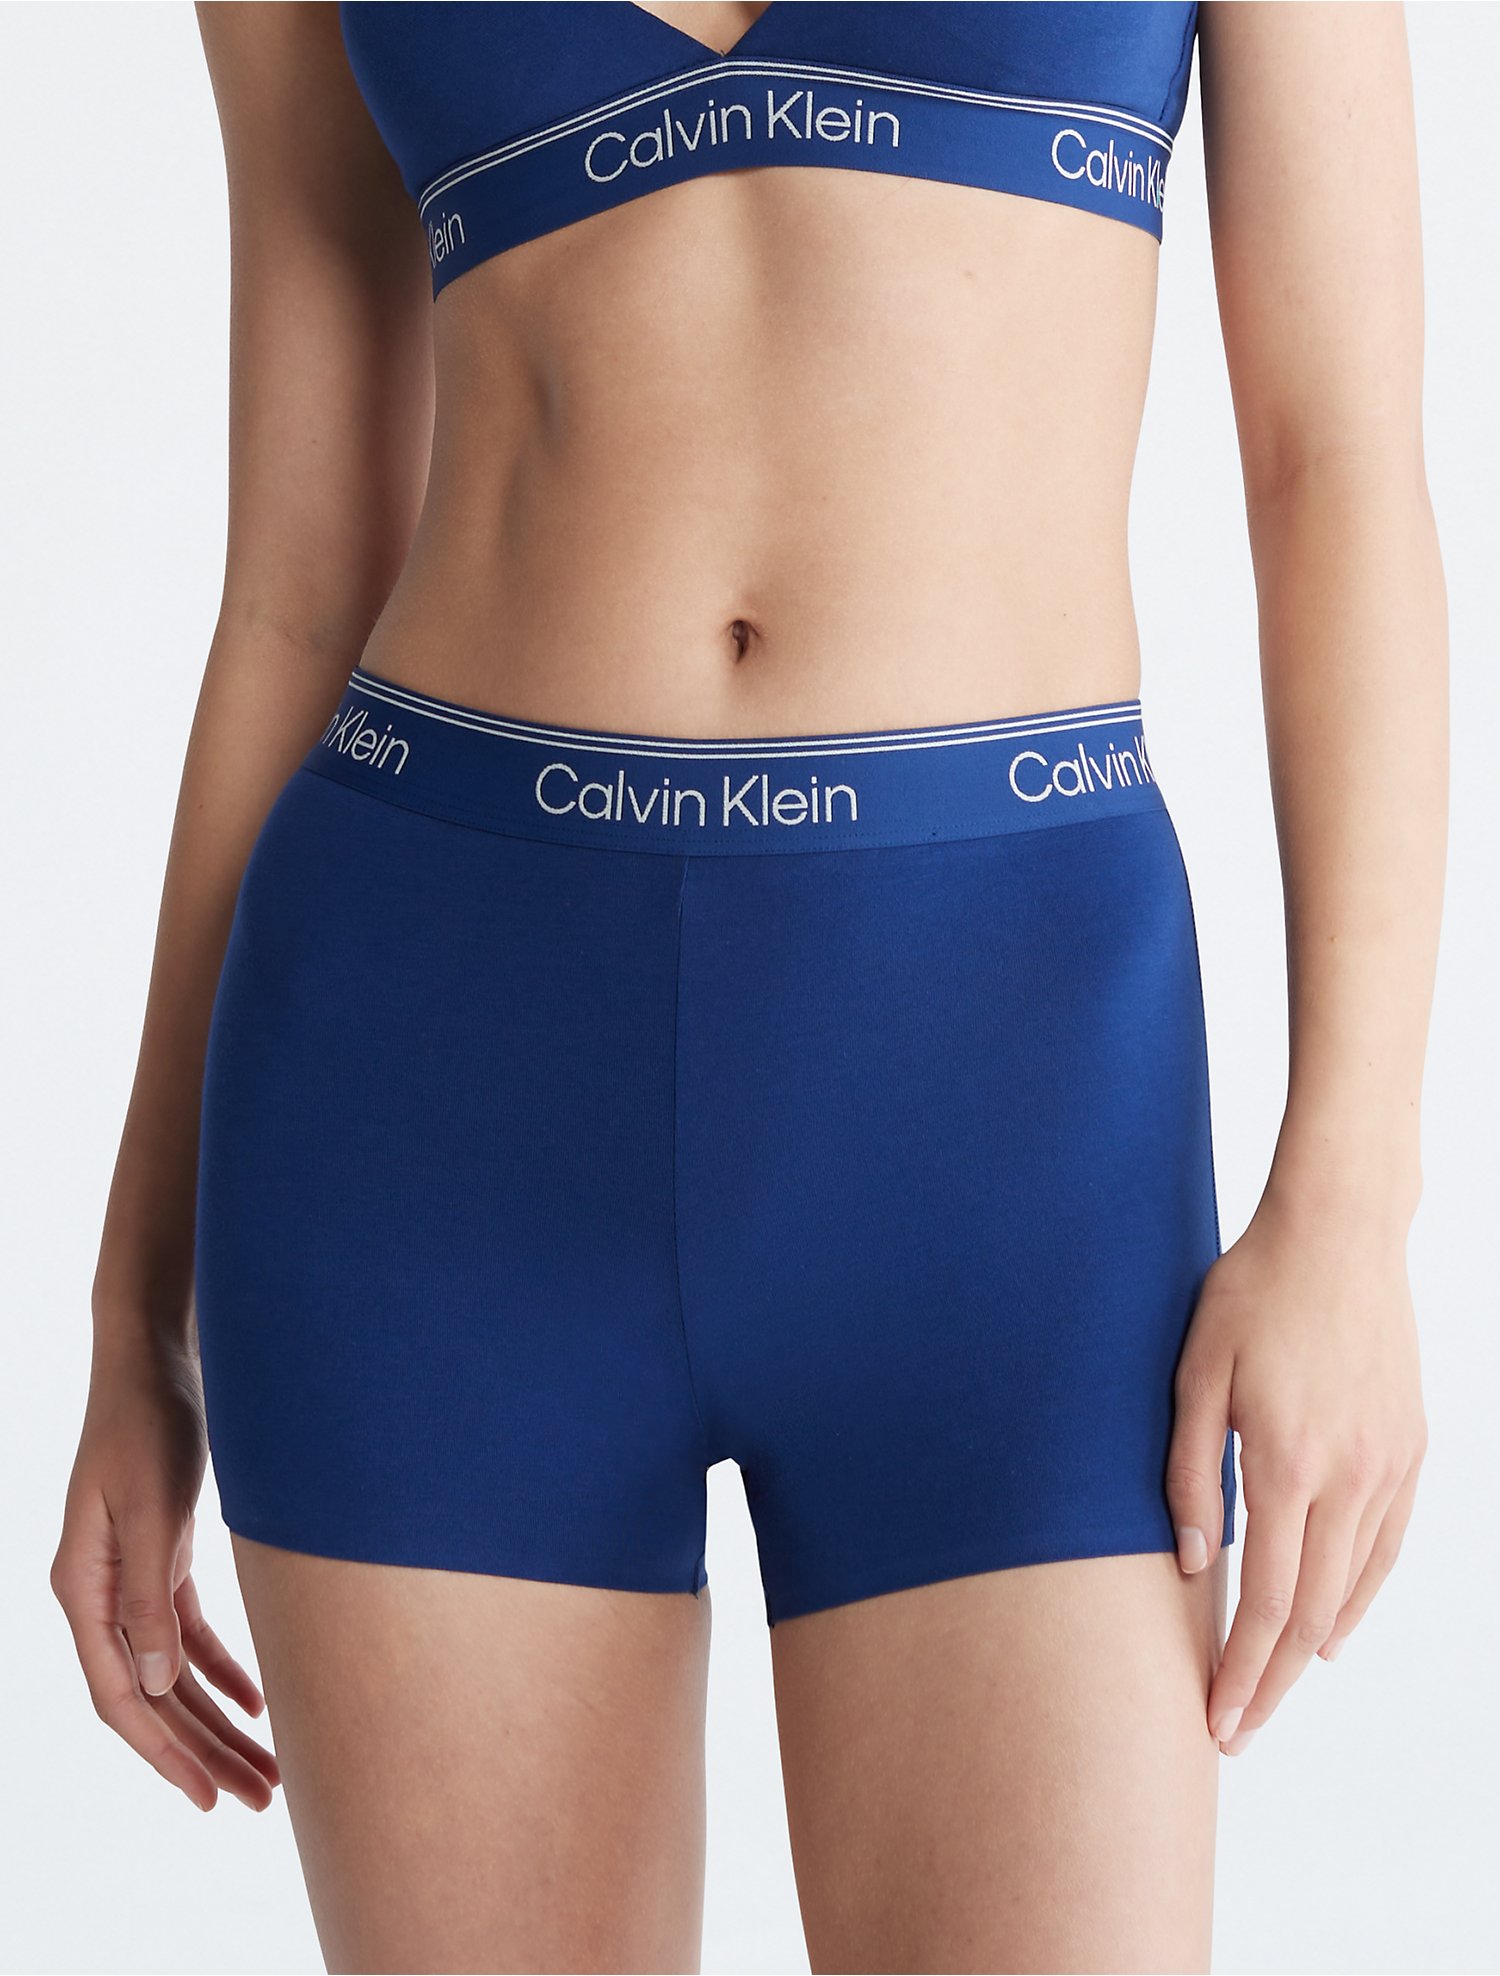 Calvin Klein Women's Seamless Hipster Panty CK D2890 Women